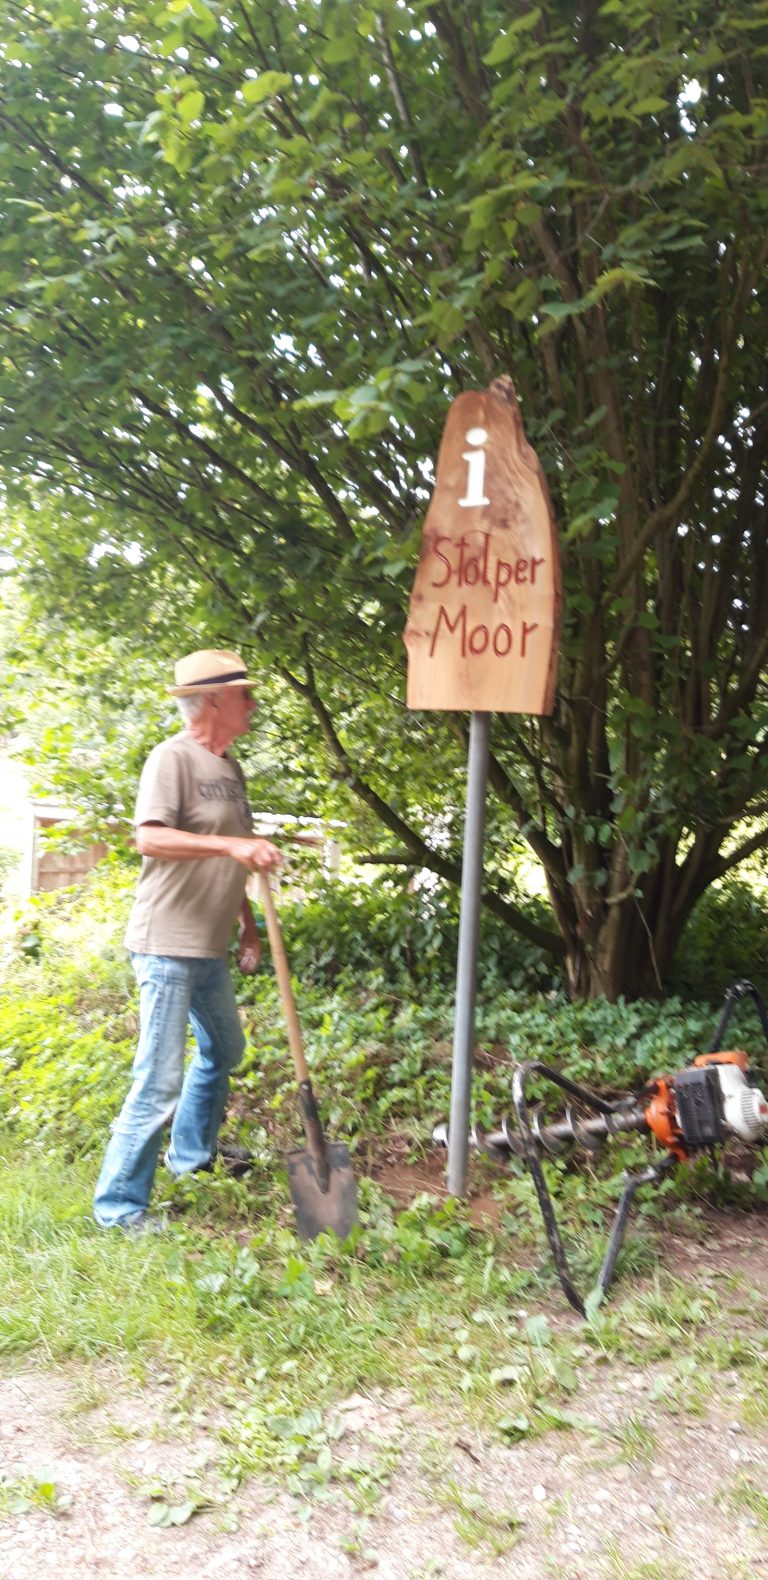 Neues Info-Schild am Stolper Moor – und eine Menge Abfall